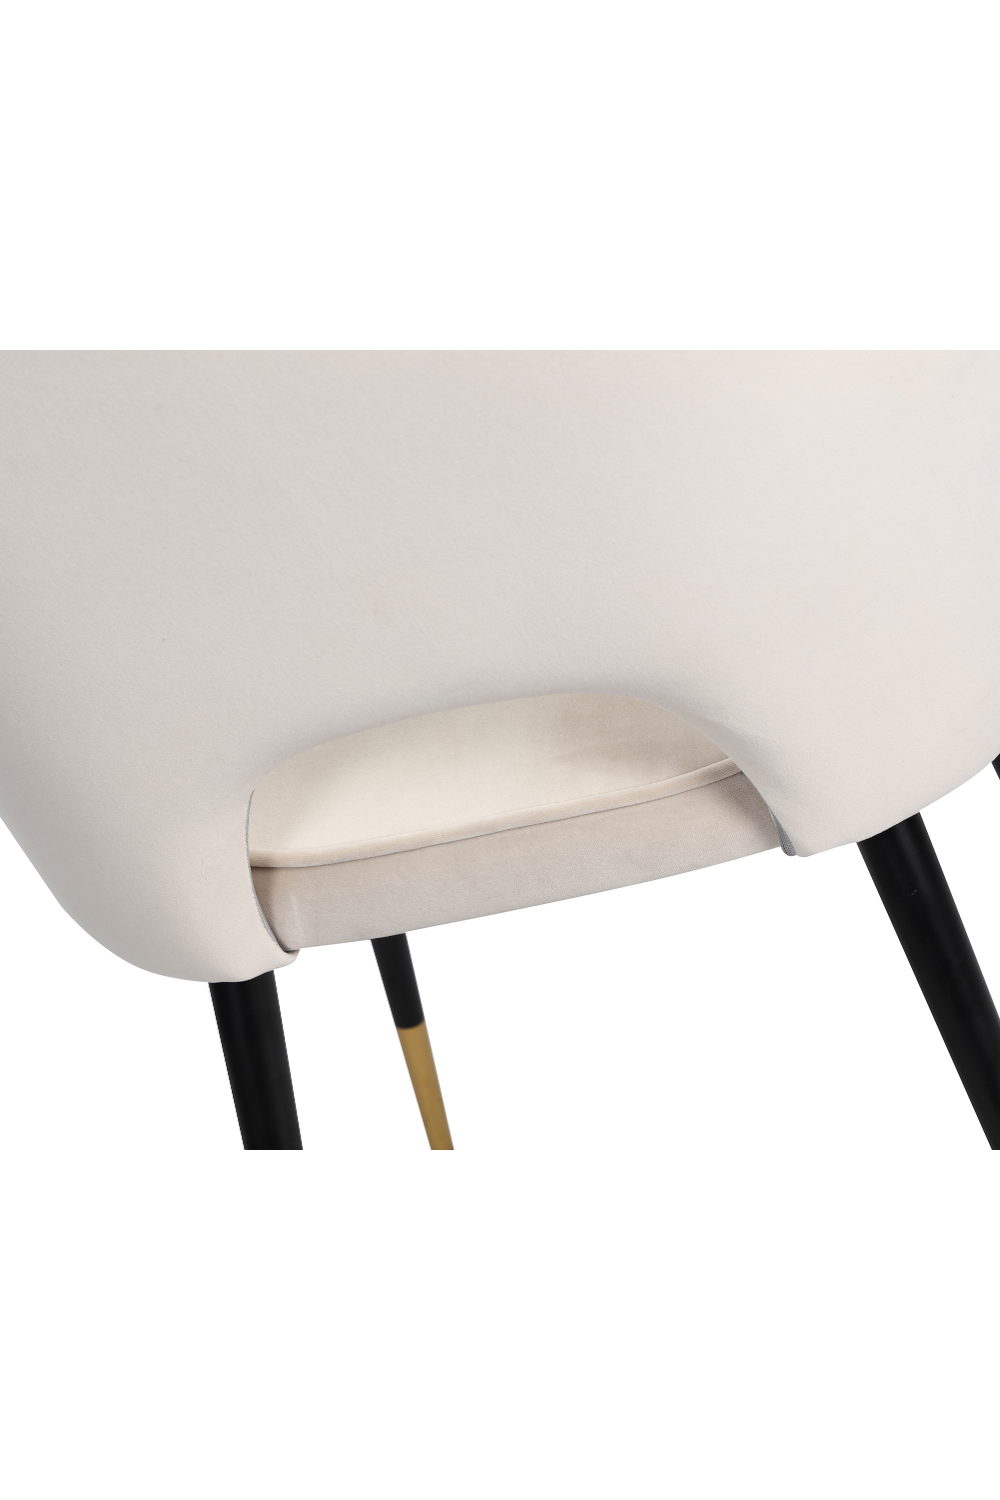 Gray Velvet Dining Chairs (2) | Liang & Eimil Jagger | OROA.com